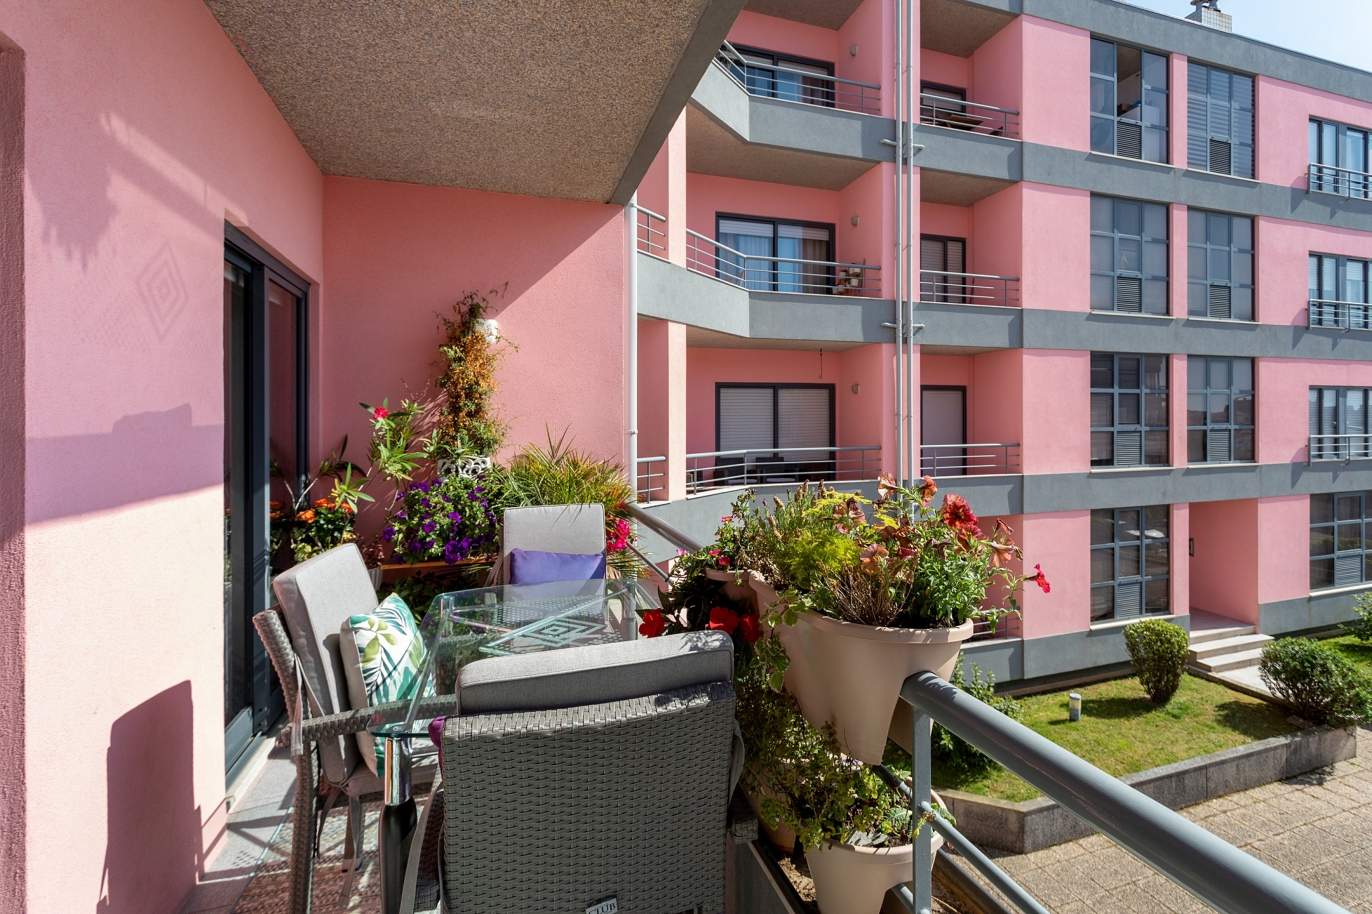 Verkauf: Wohnung mit Balkon und Meerblick, in Canidelo, V. N. Gaia, Portugal_174655